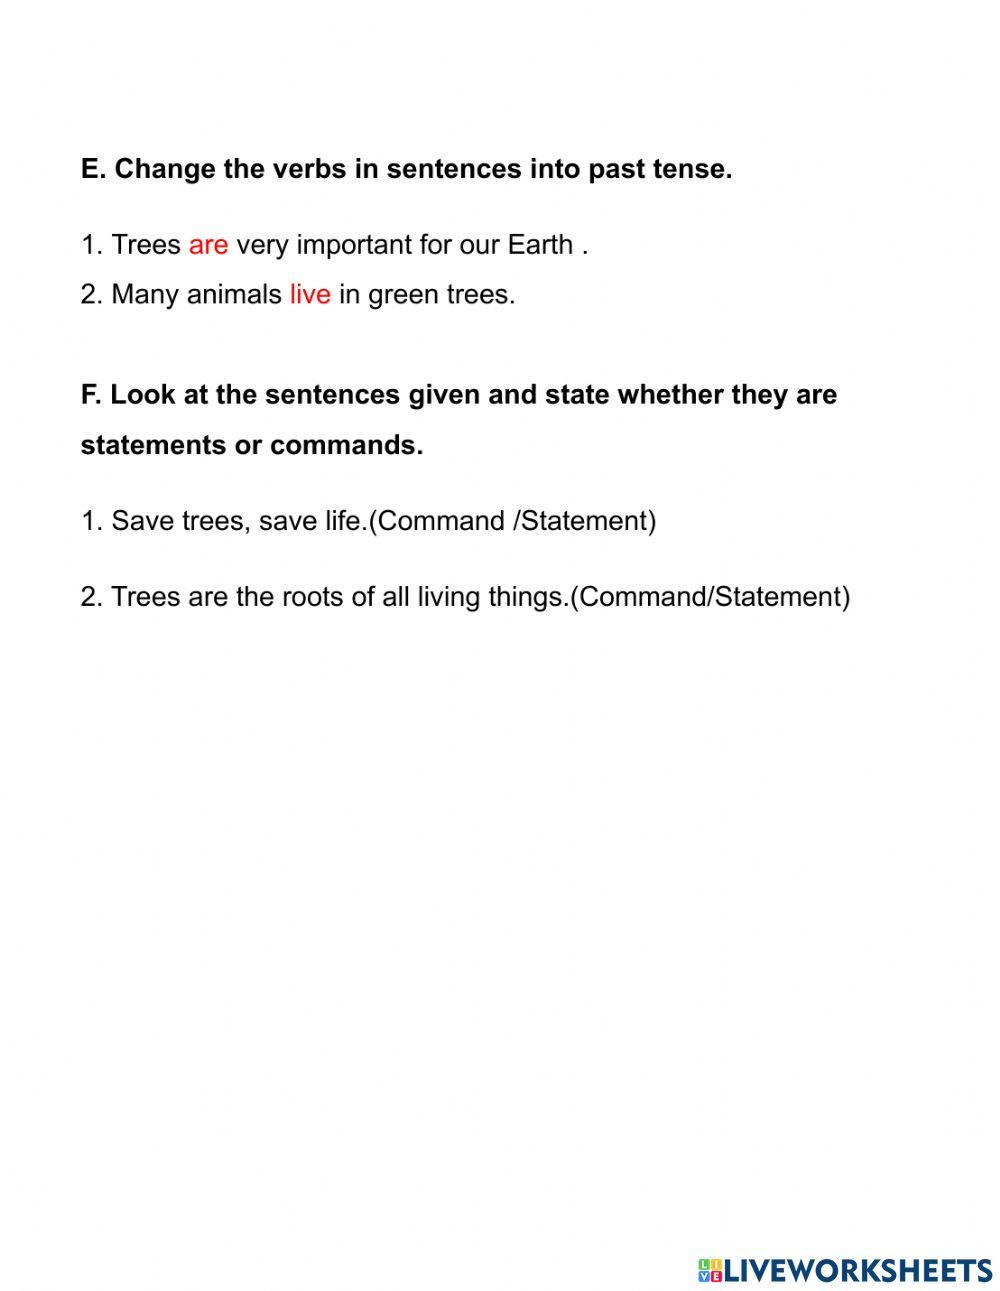 English Worksheet